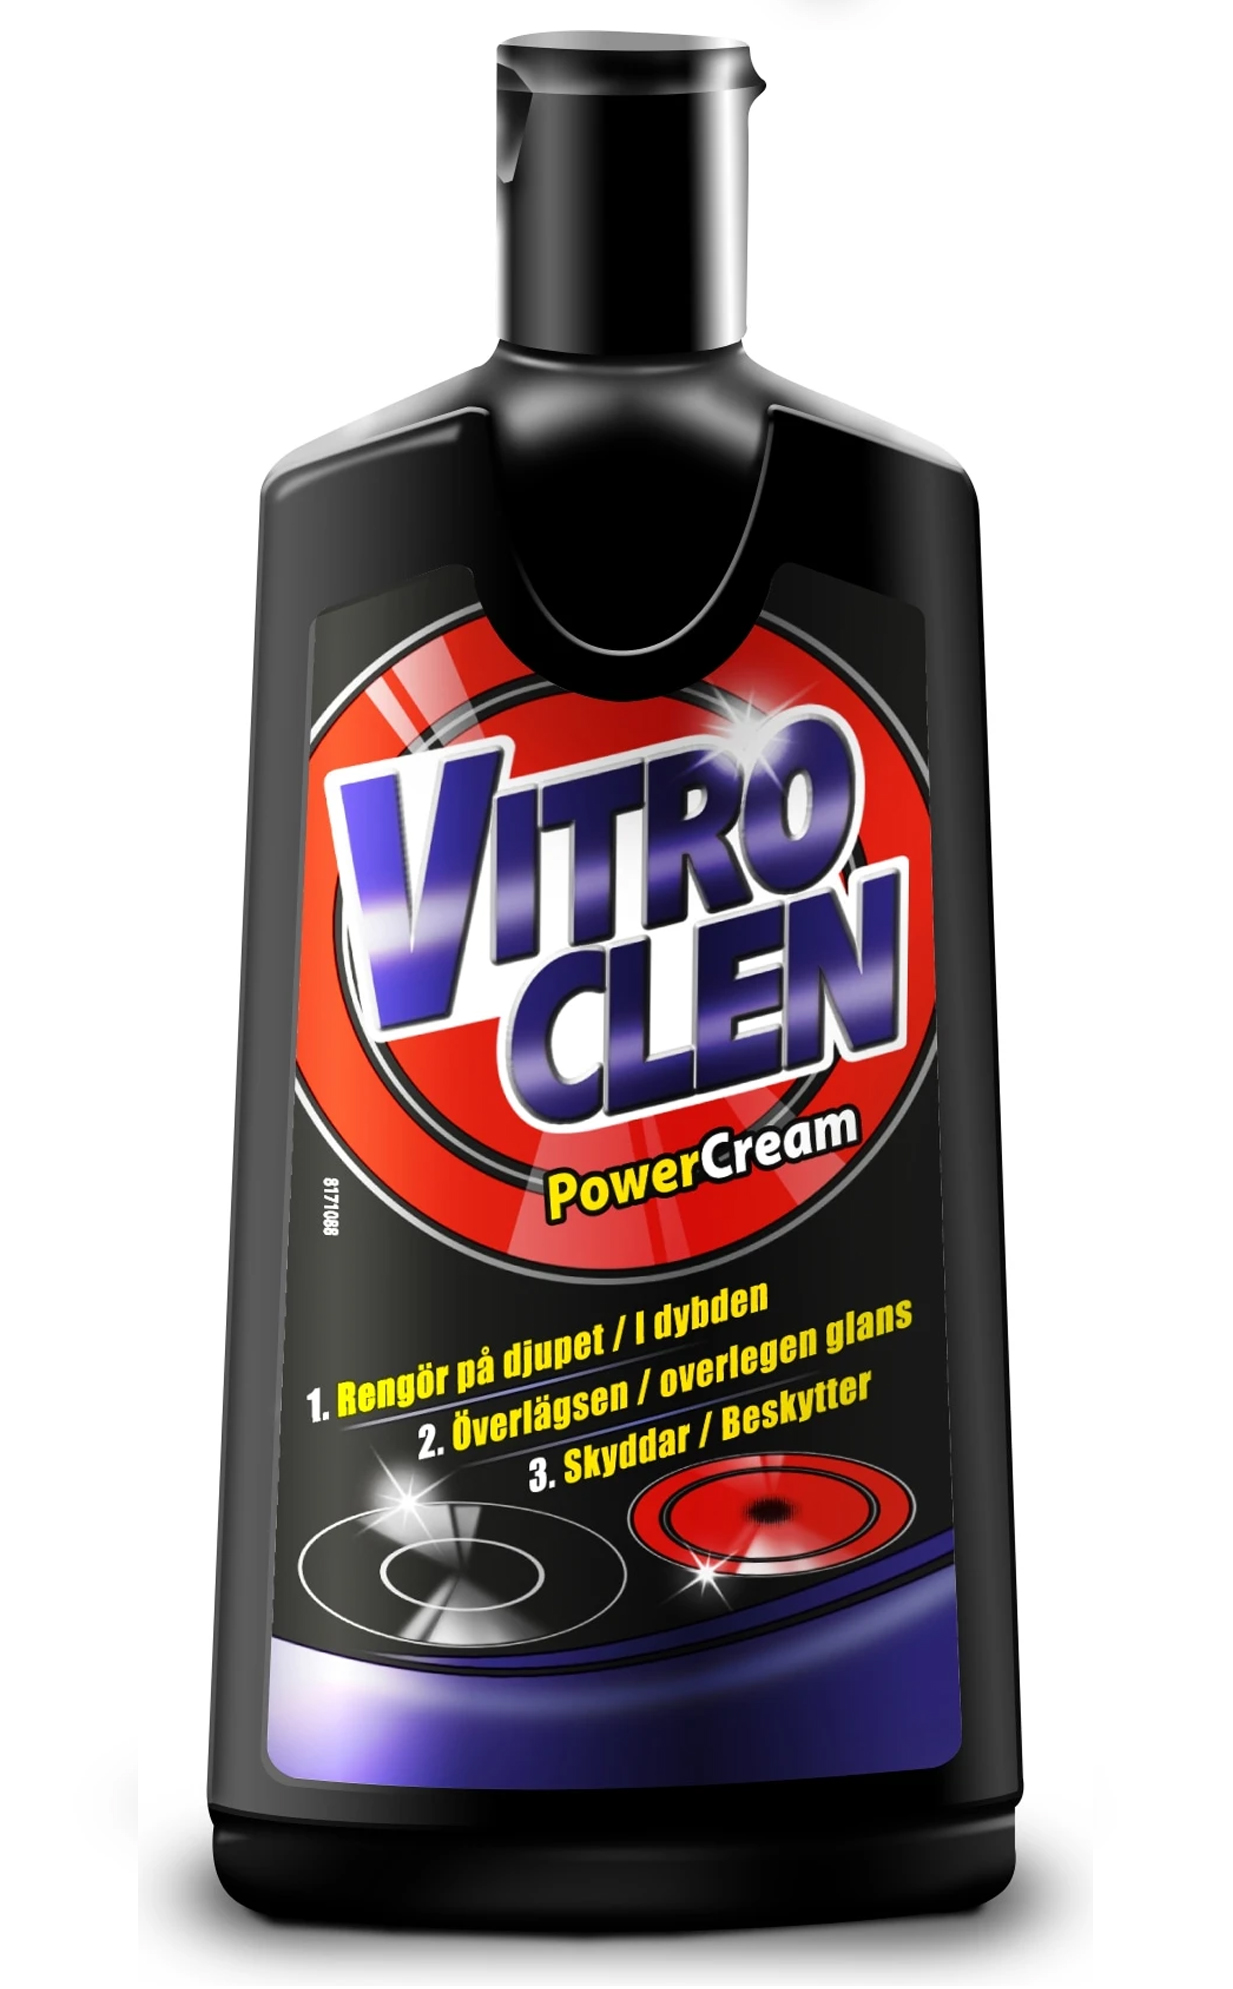 Vitro Clen puhdistusneste 200ml
